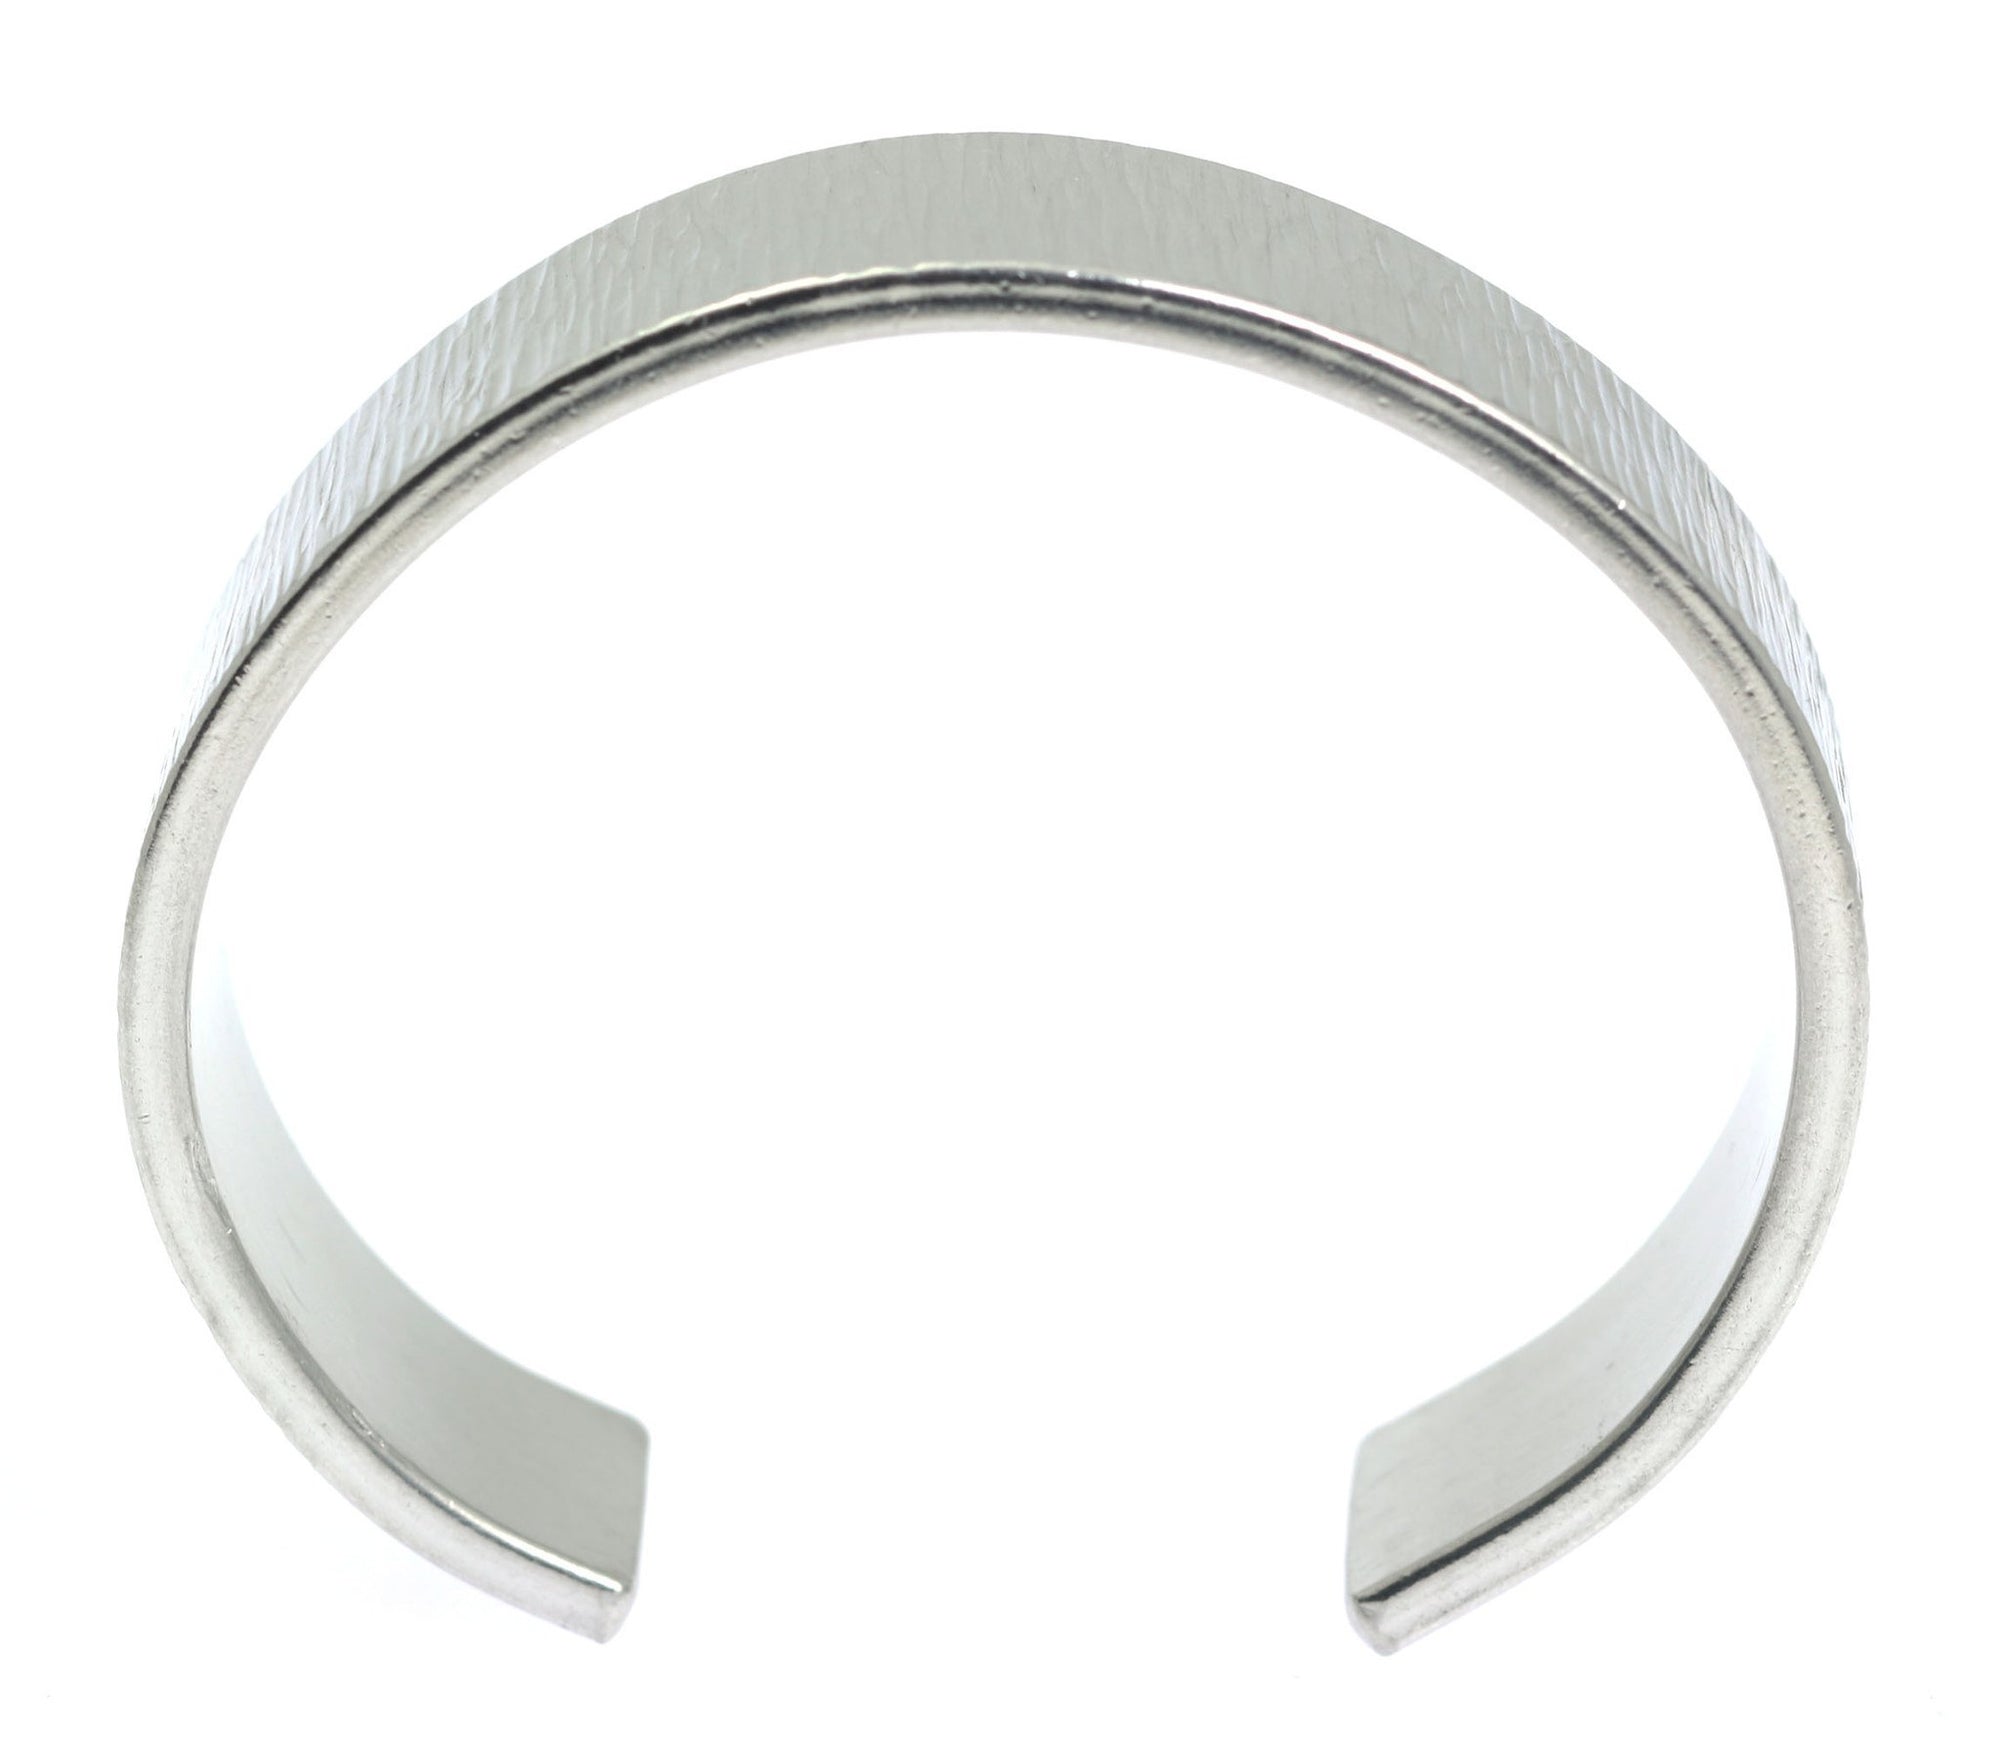 Shape of Chased Aluminum Cuff Bracelet